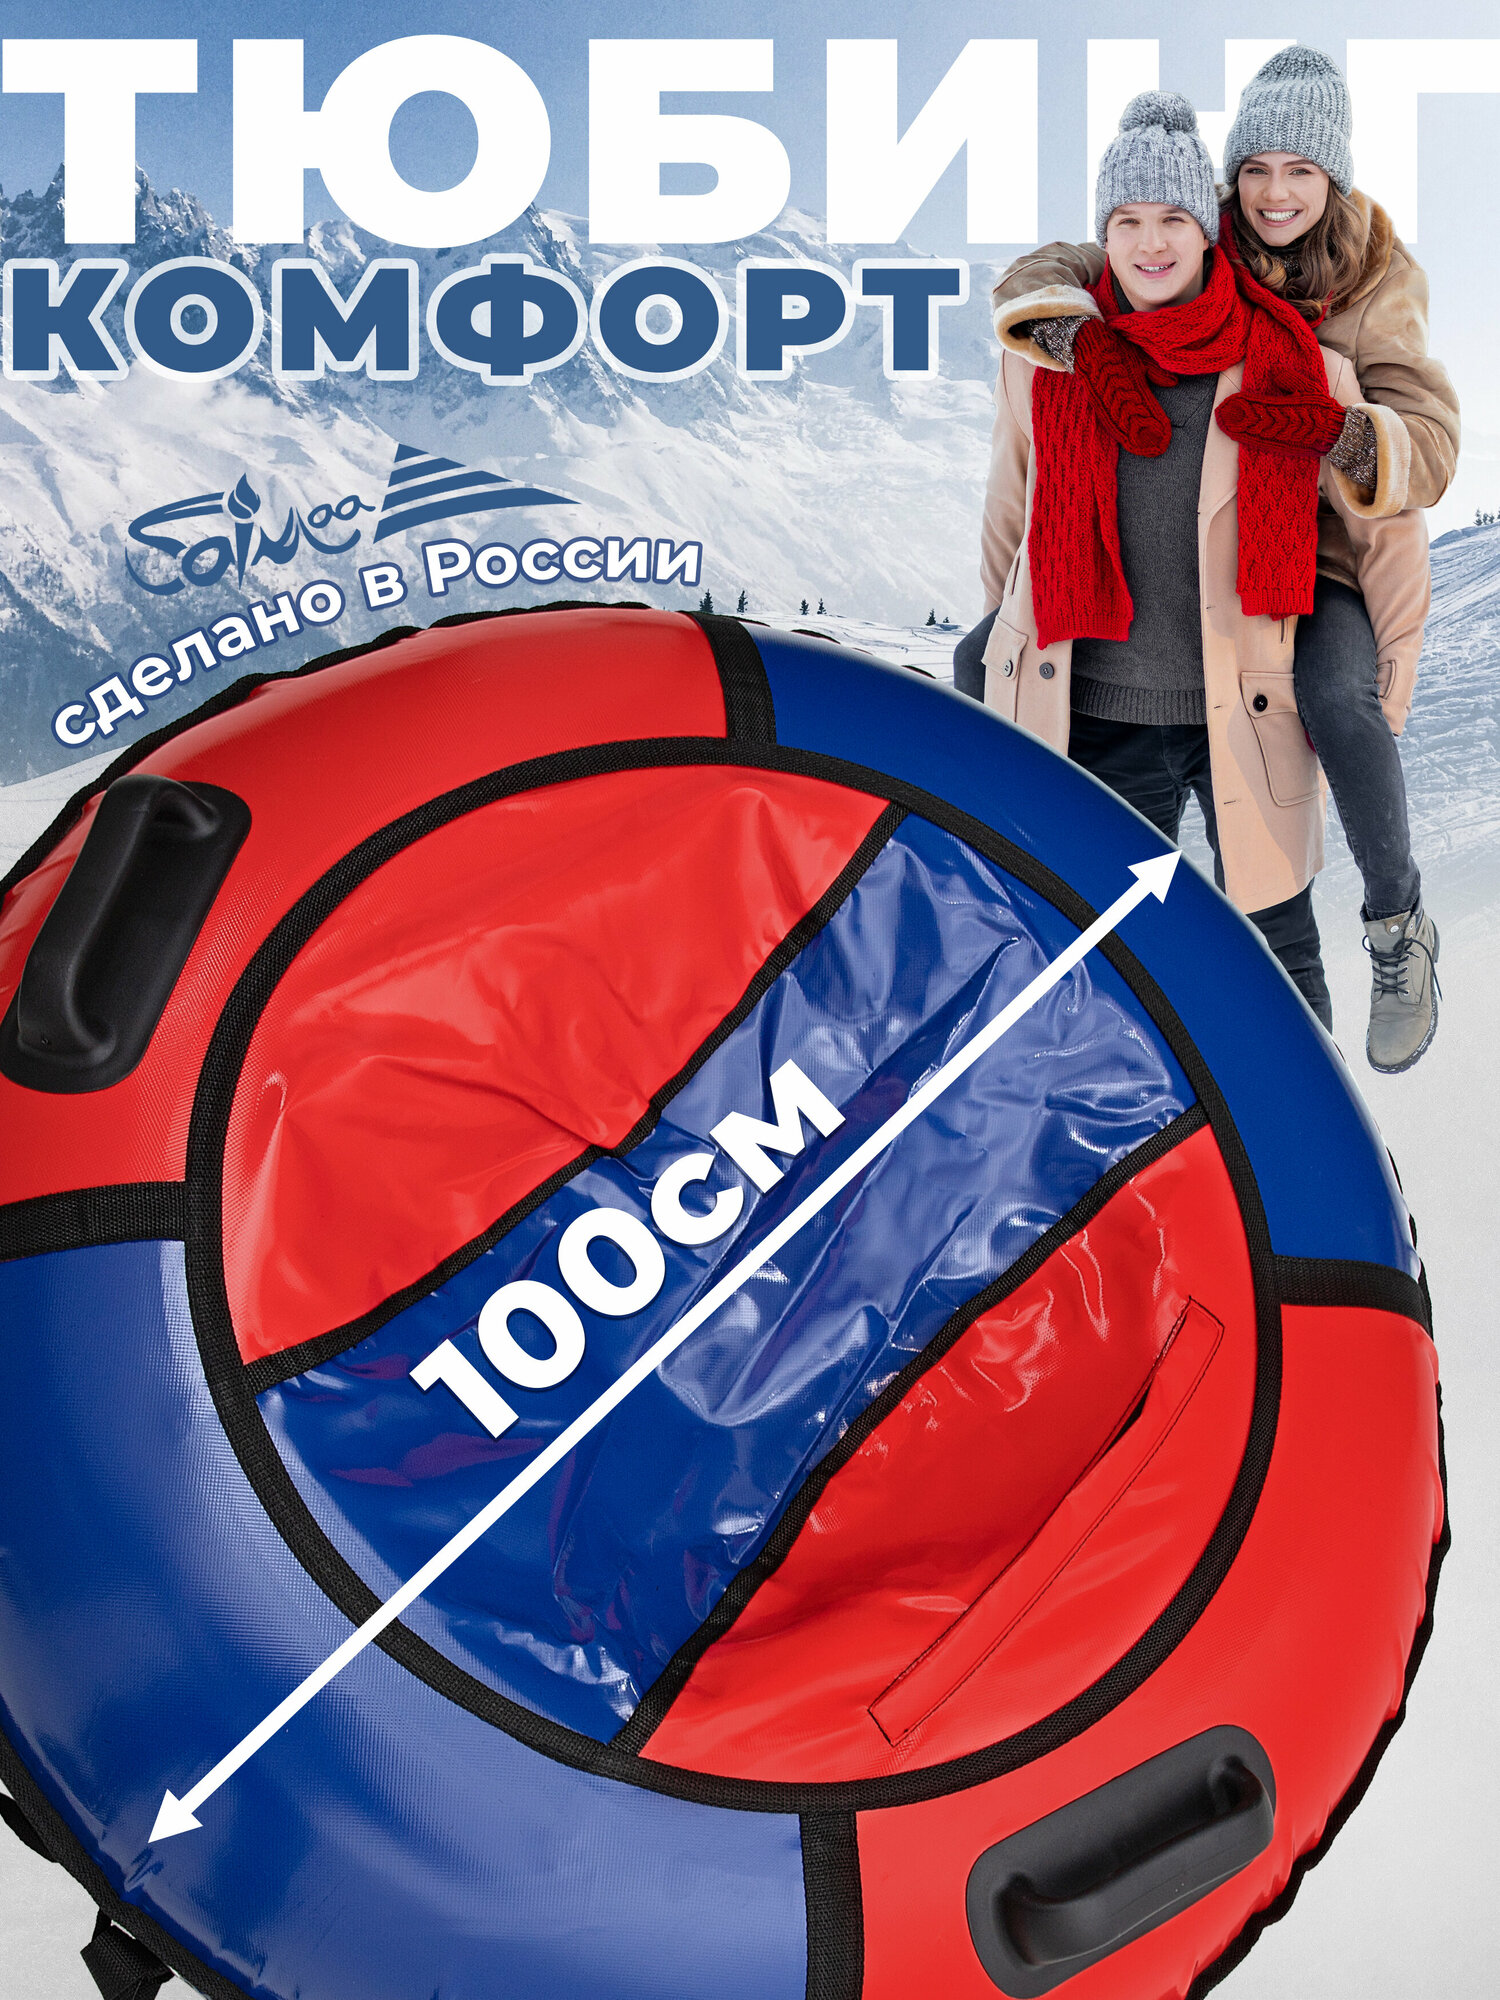 Ватрушка тюбинг для катания Saimaa "Комфорт" 100 см сине-красный